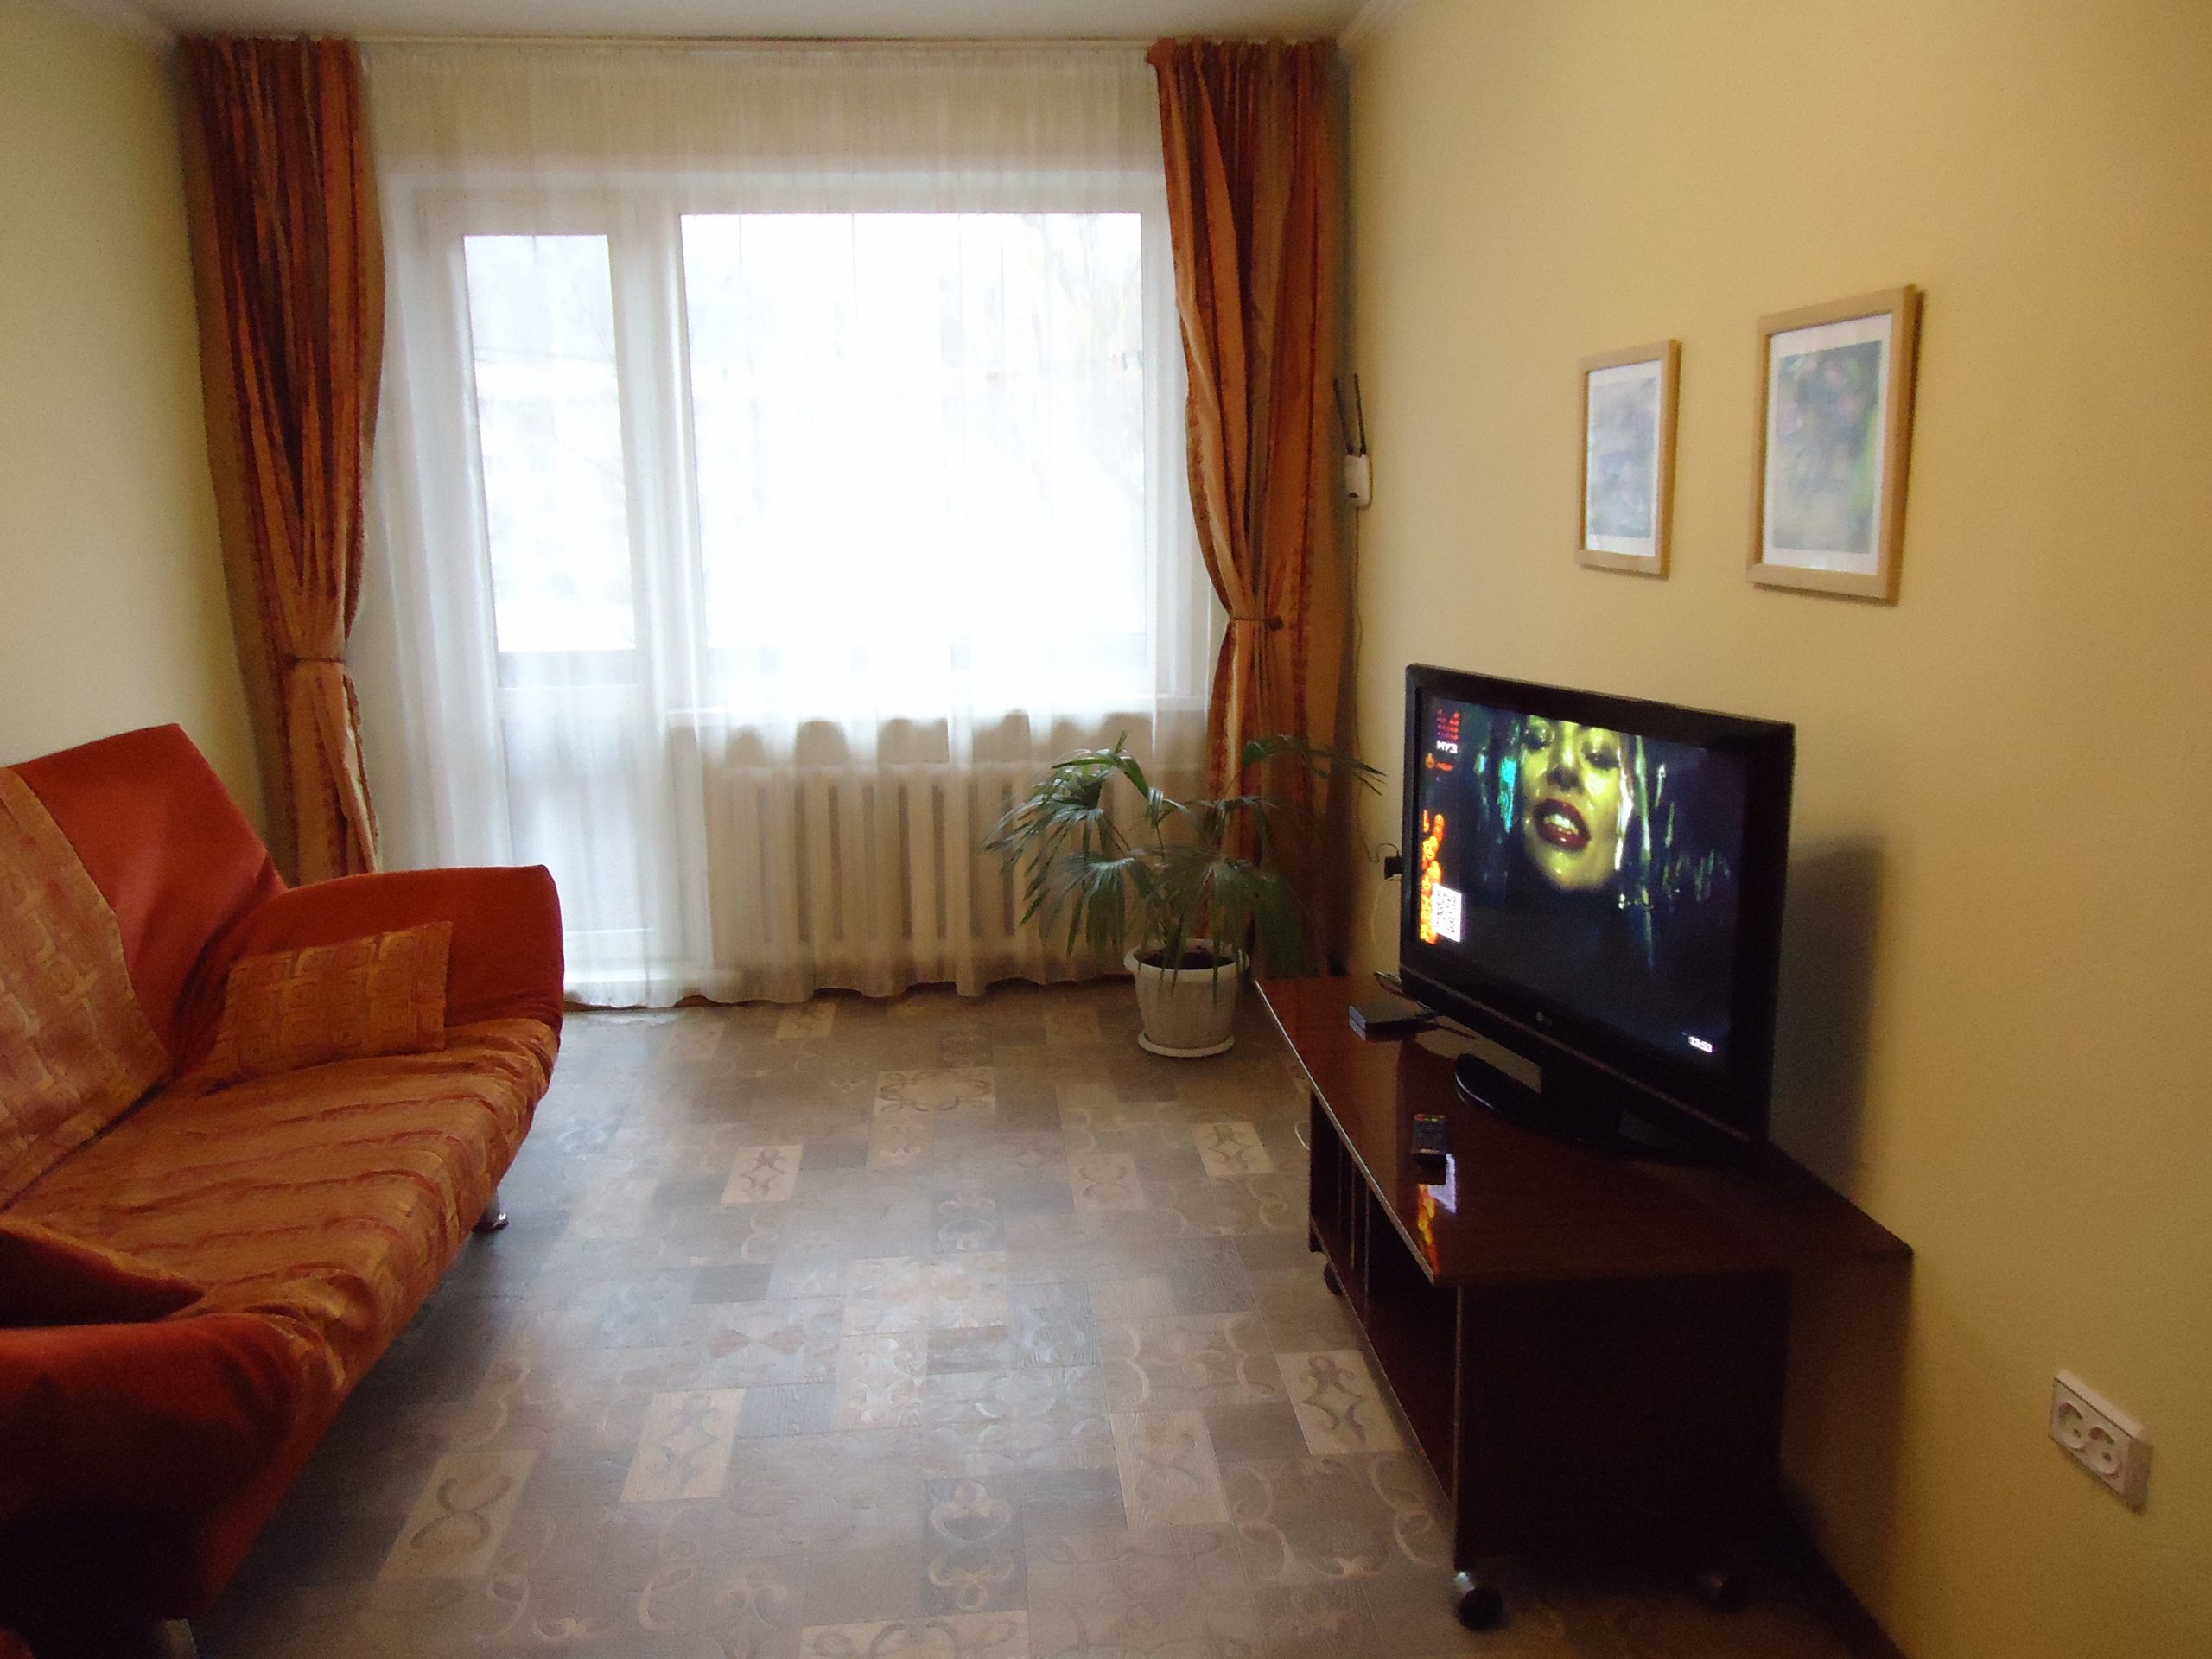 Двухкомнатная квартира на ул. Чорос-Гуркина 50 (50кв.м)